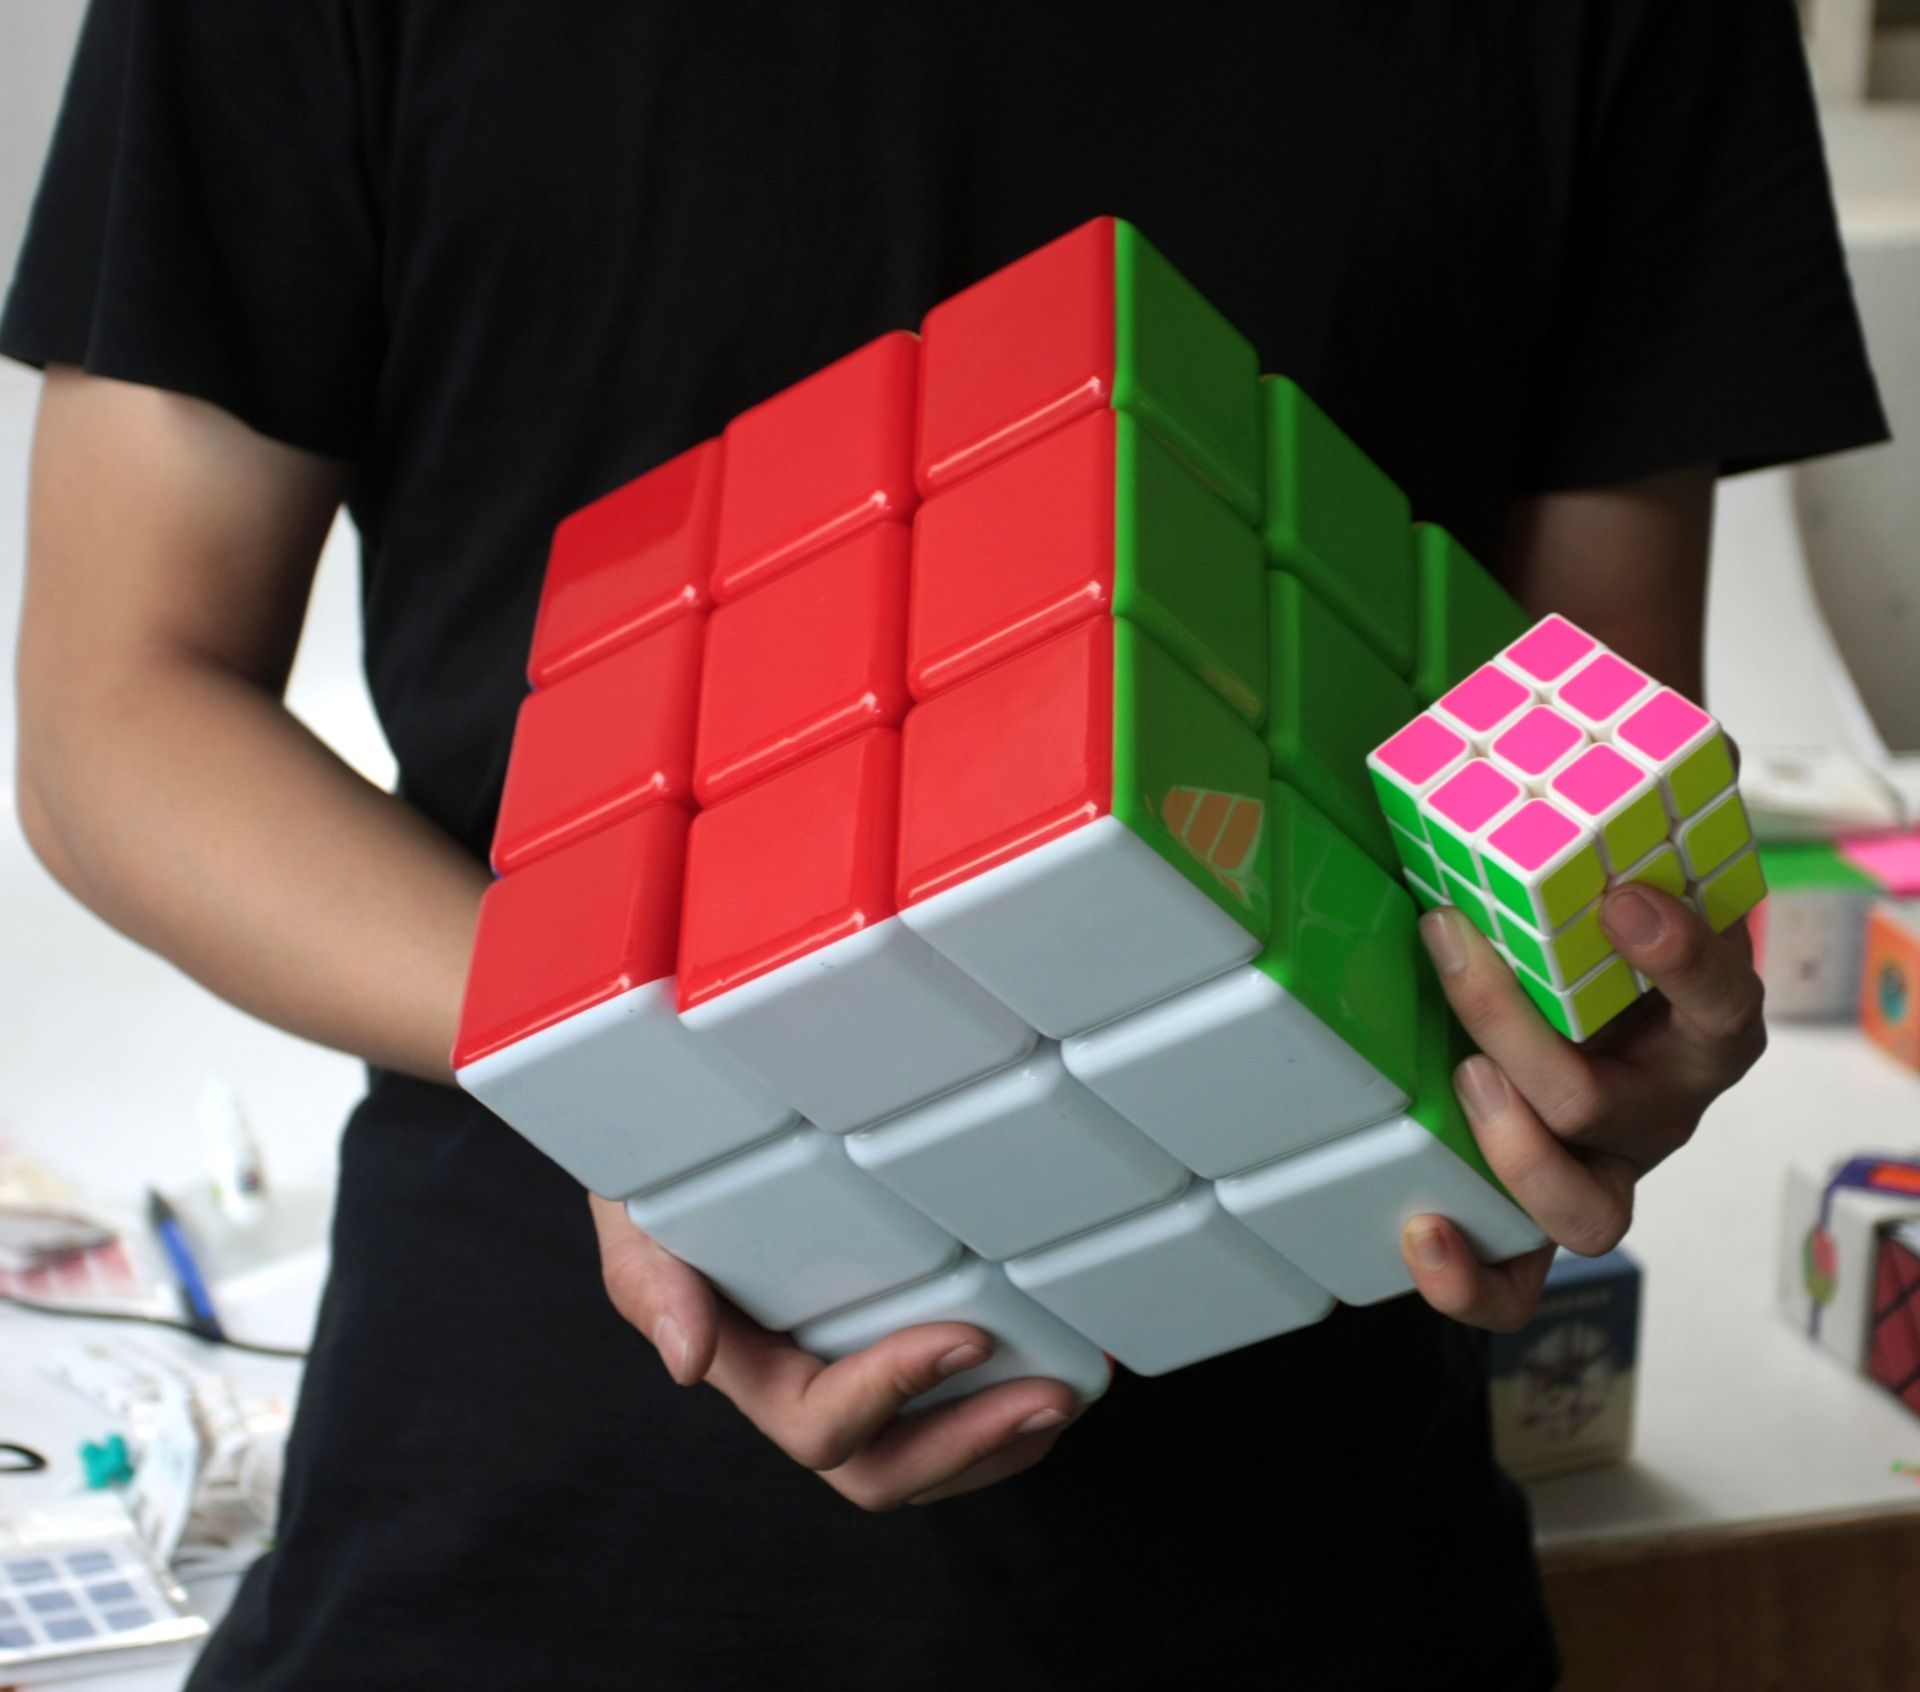 Cubo Mágico 3x3x3 Gigante - 18 CM - Oncube: os melhores cubos